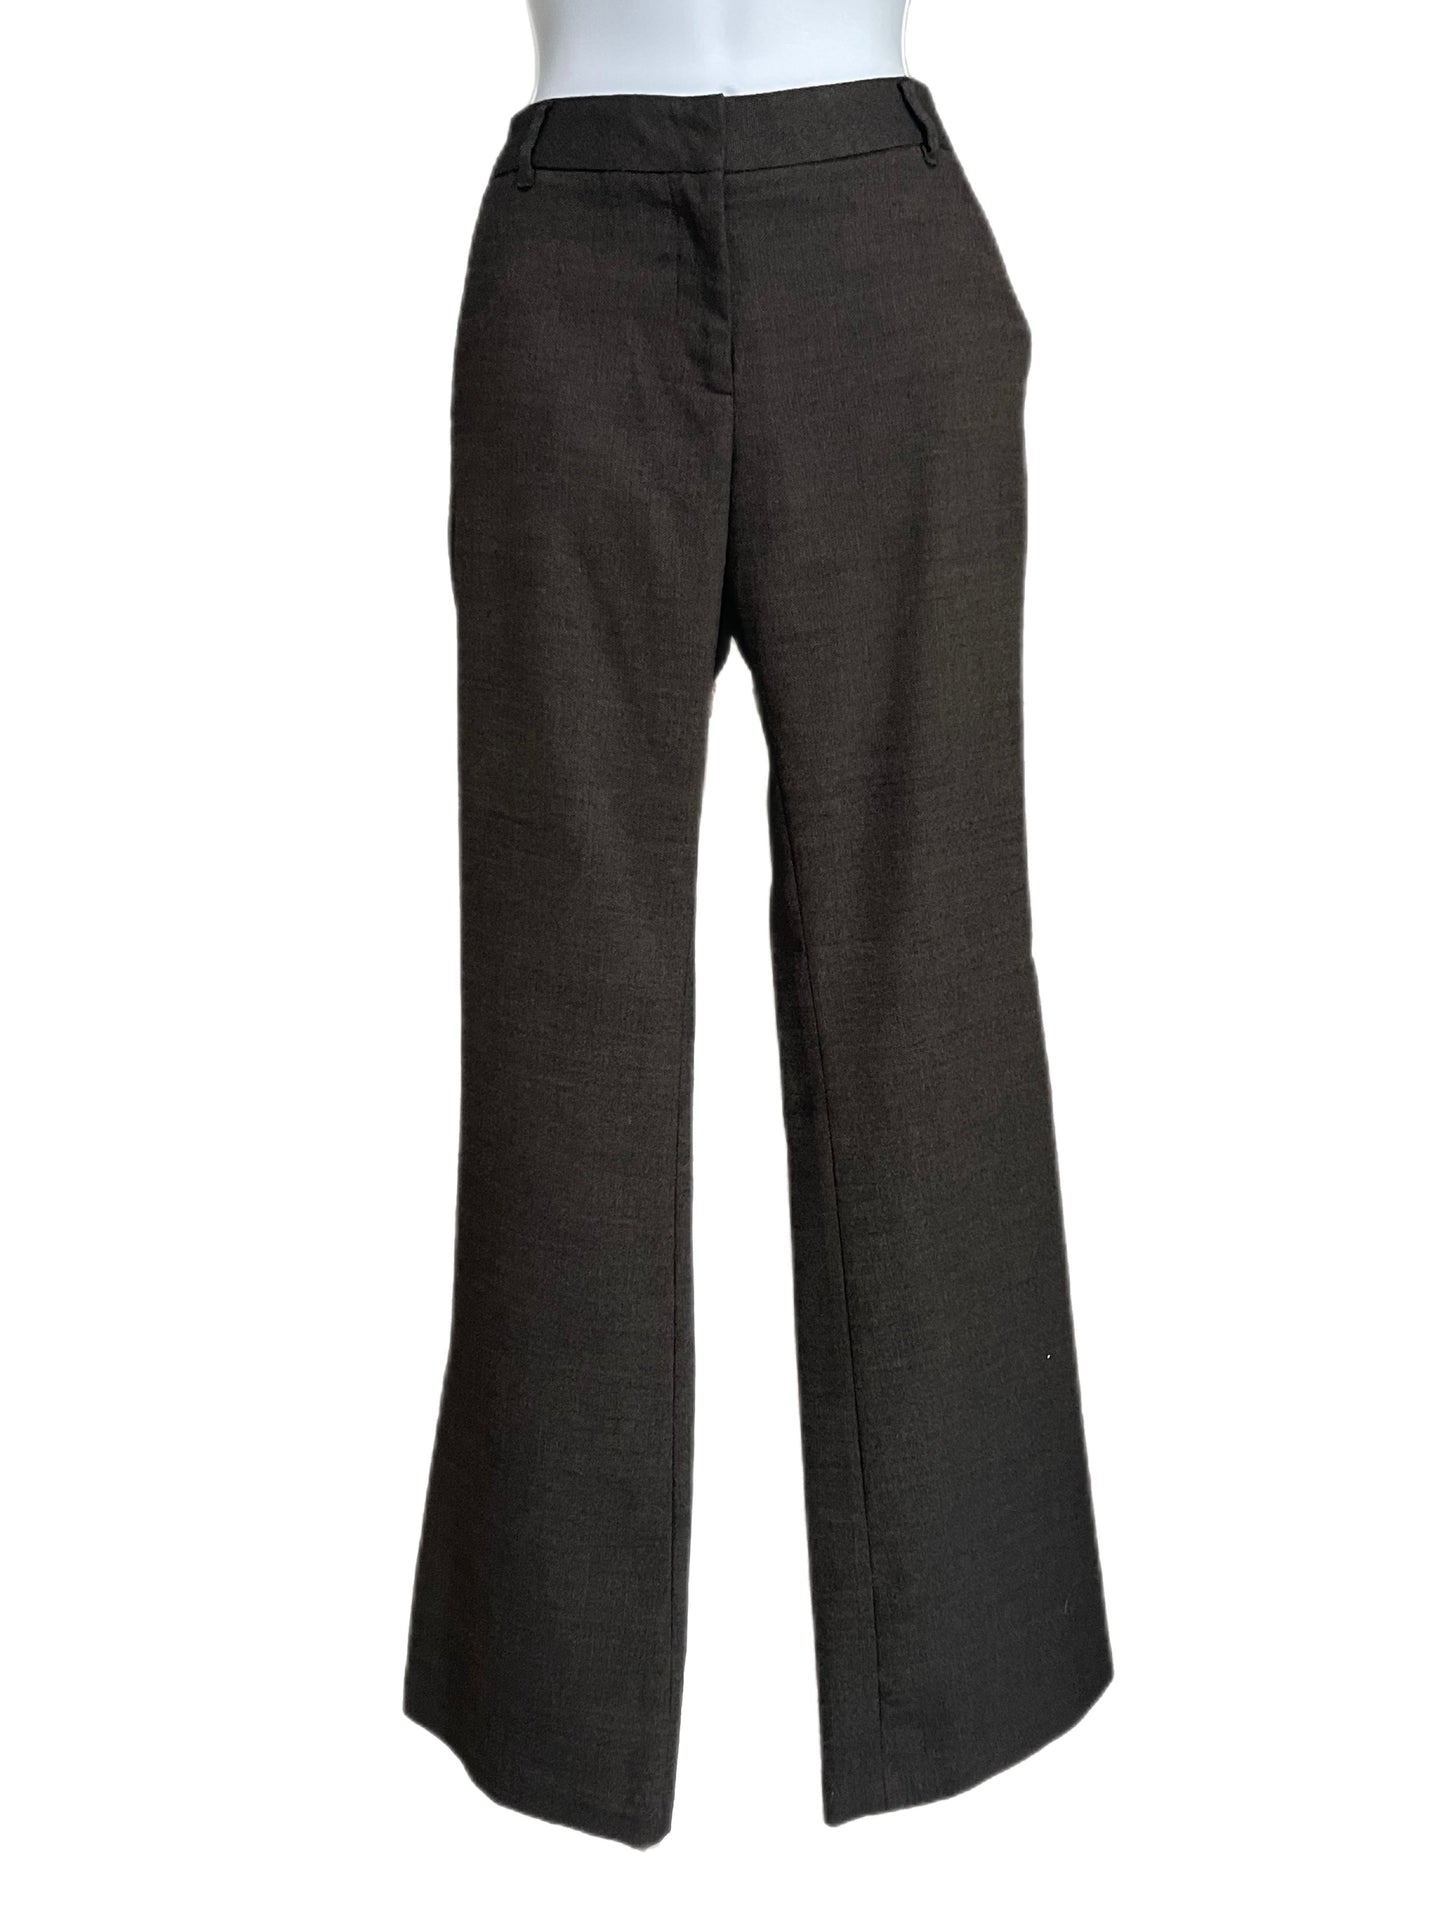 Pants-Brown/Black Tweed-Semi Wide Legs By L'AGENCE